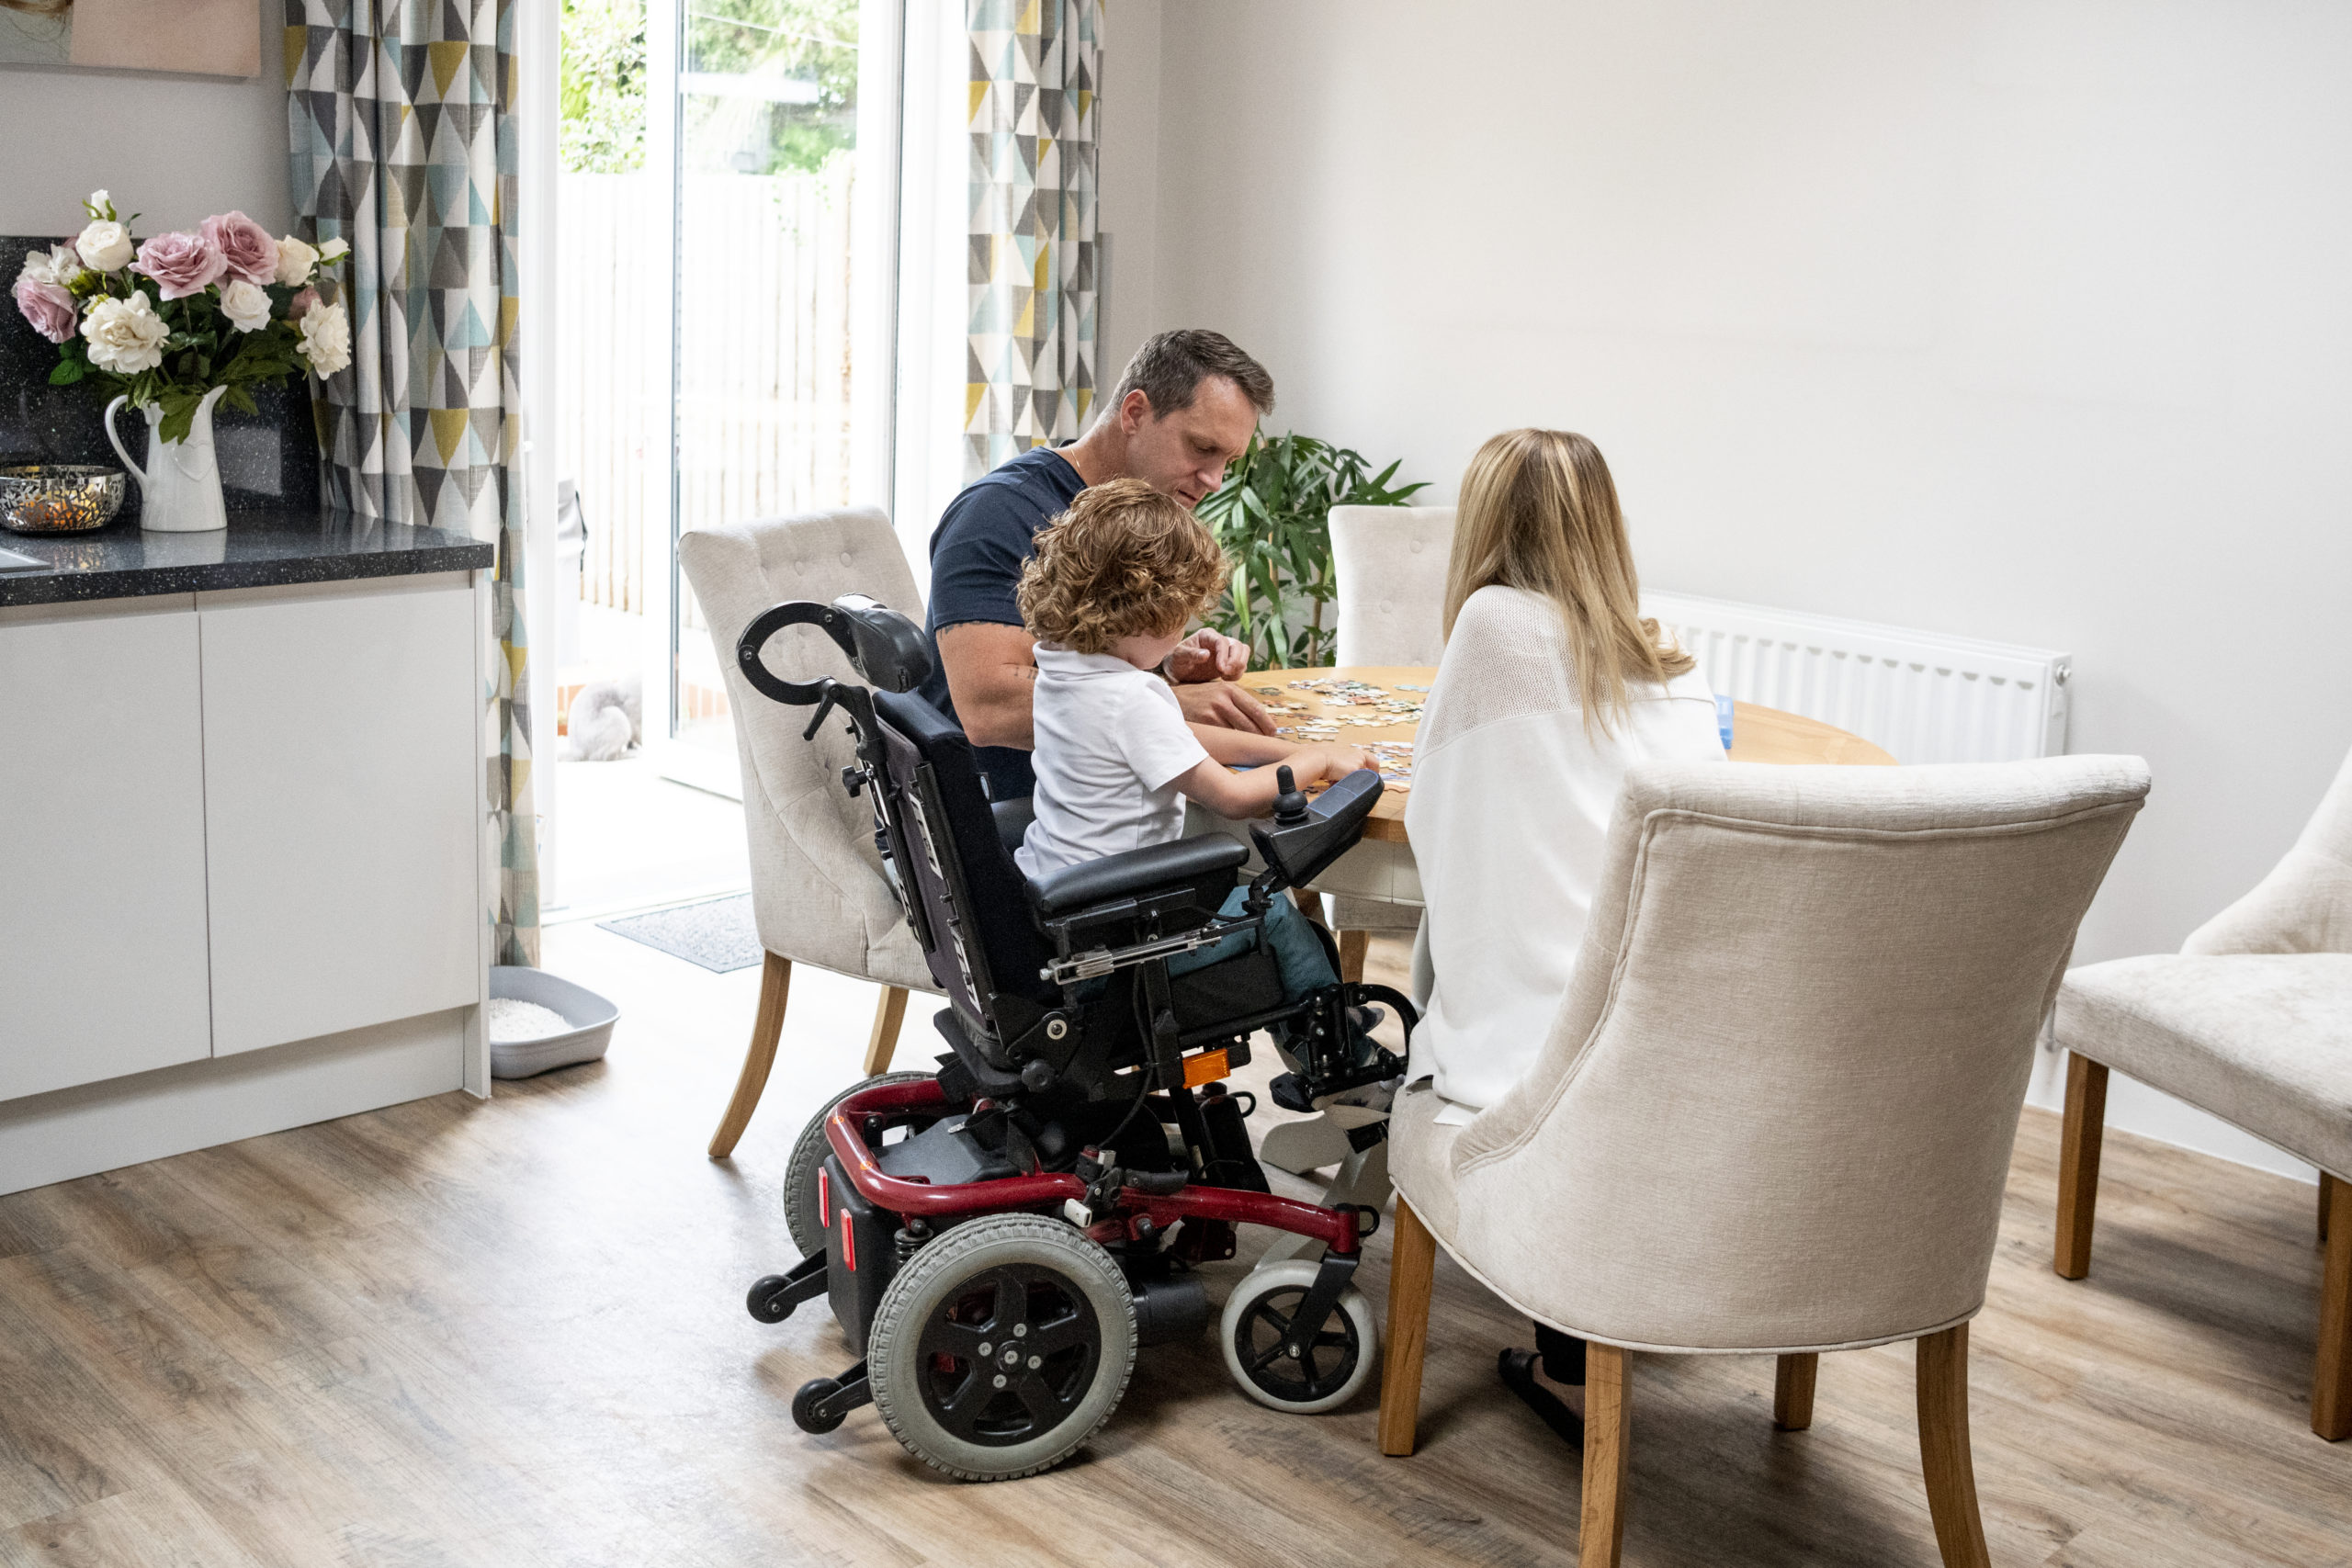 Kleinfamilie mit Kind im Elektro-Rollstuhl bei einem Spiel am Wohnzimmertisch